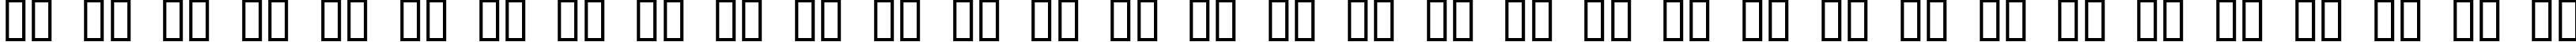 Пример написания русского алфавита шрифтом JI Kaleidoscope Bats